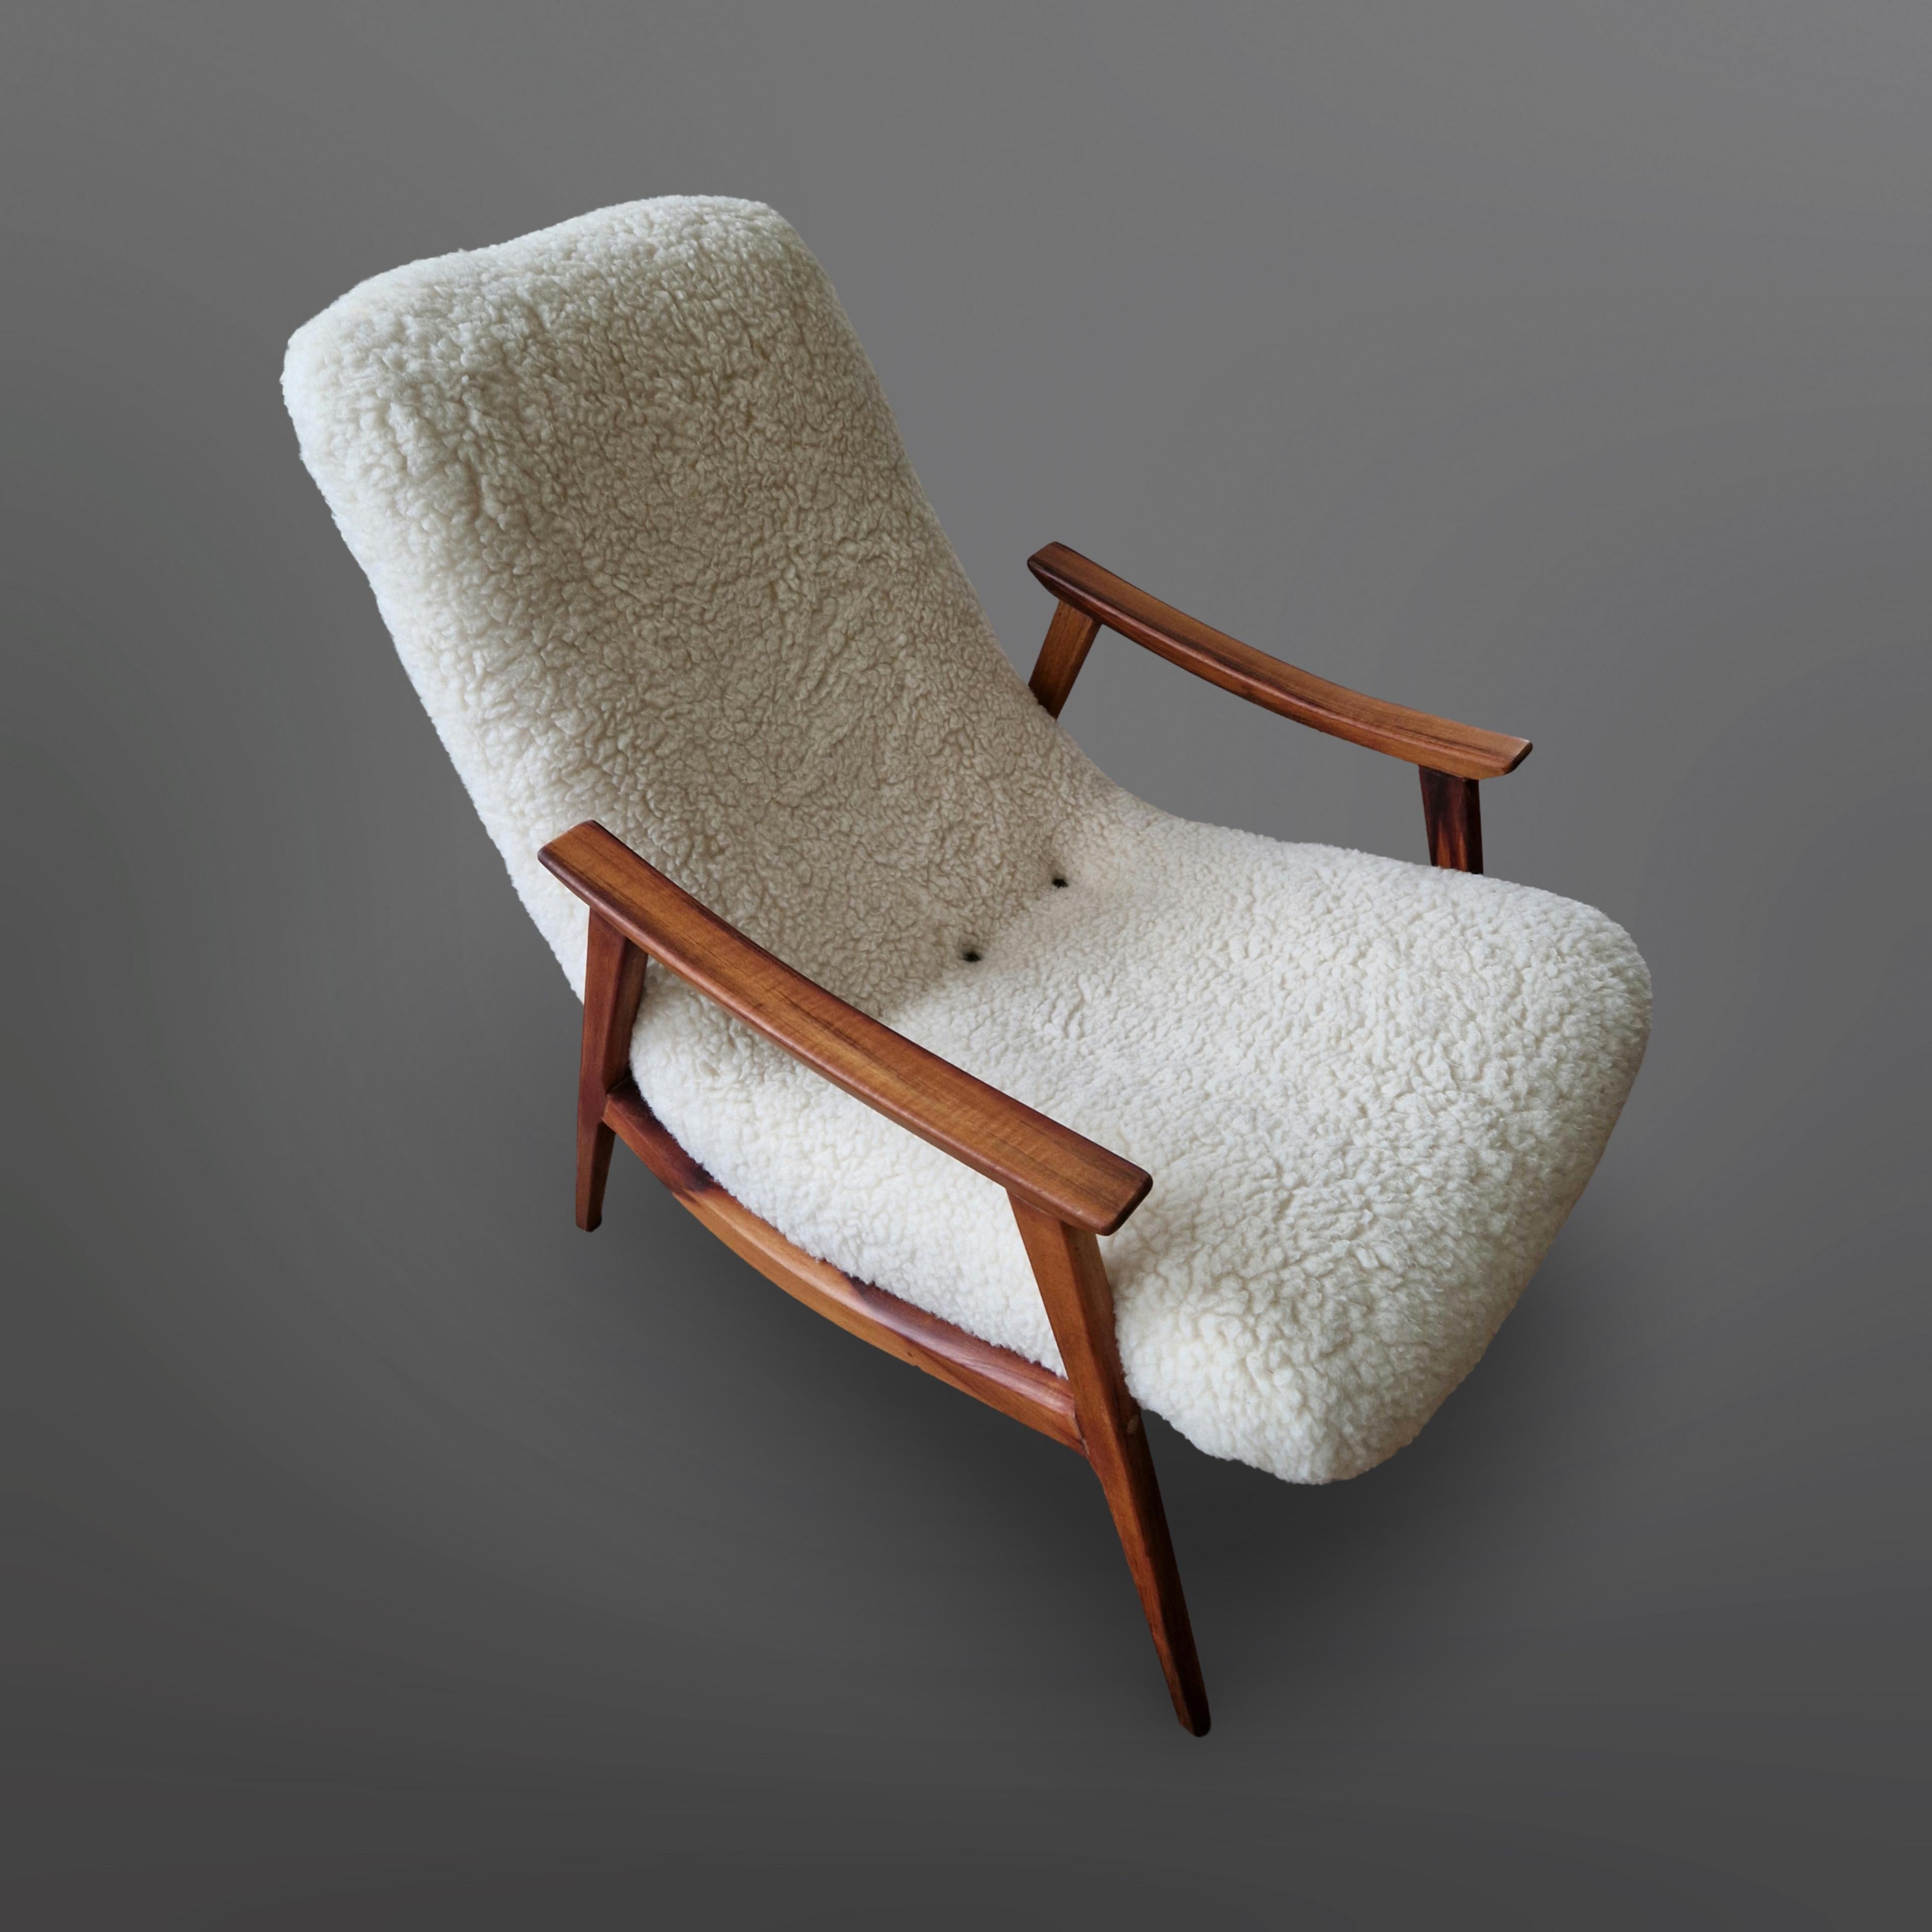 Chaise longue moderne du milieu du siècle entièrement restaurée. Fabriqué par Gelli industry de móveis dans les années 1950.
Le cadre est en bois de rose à la couleur riche et profonde et au grain magnifique. L'assise d'une seule pièce suit les